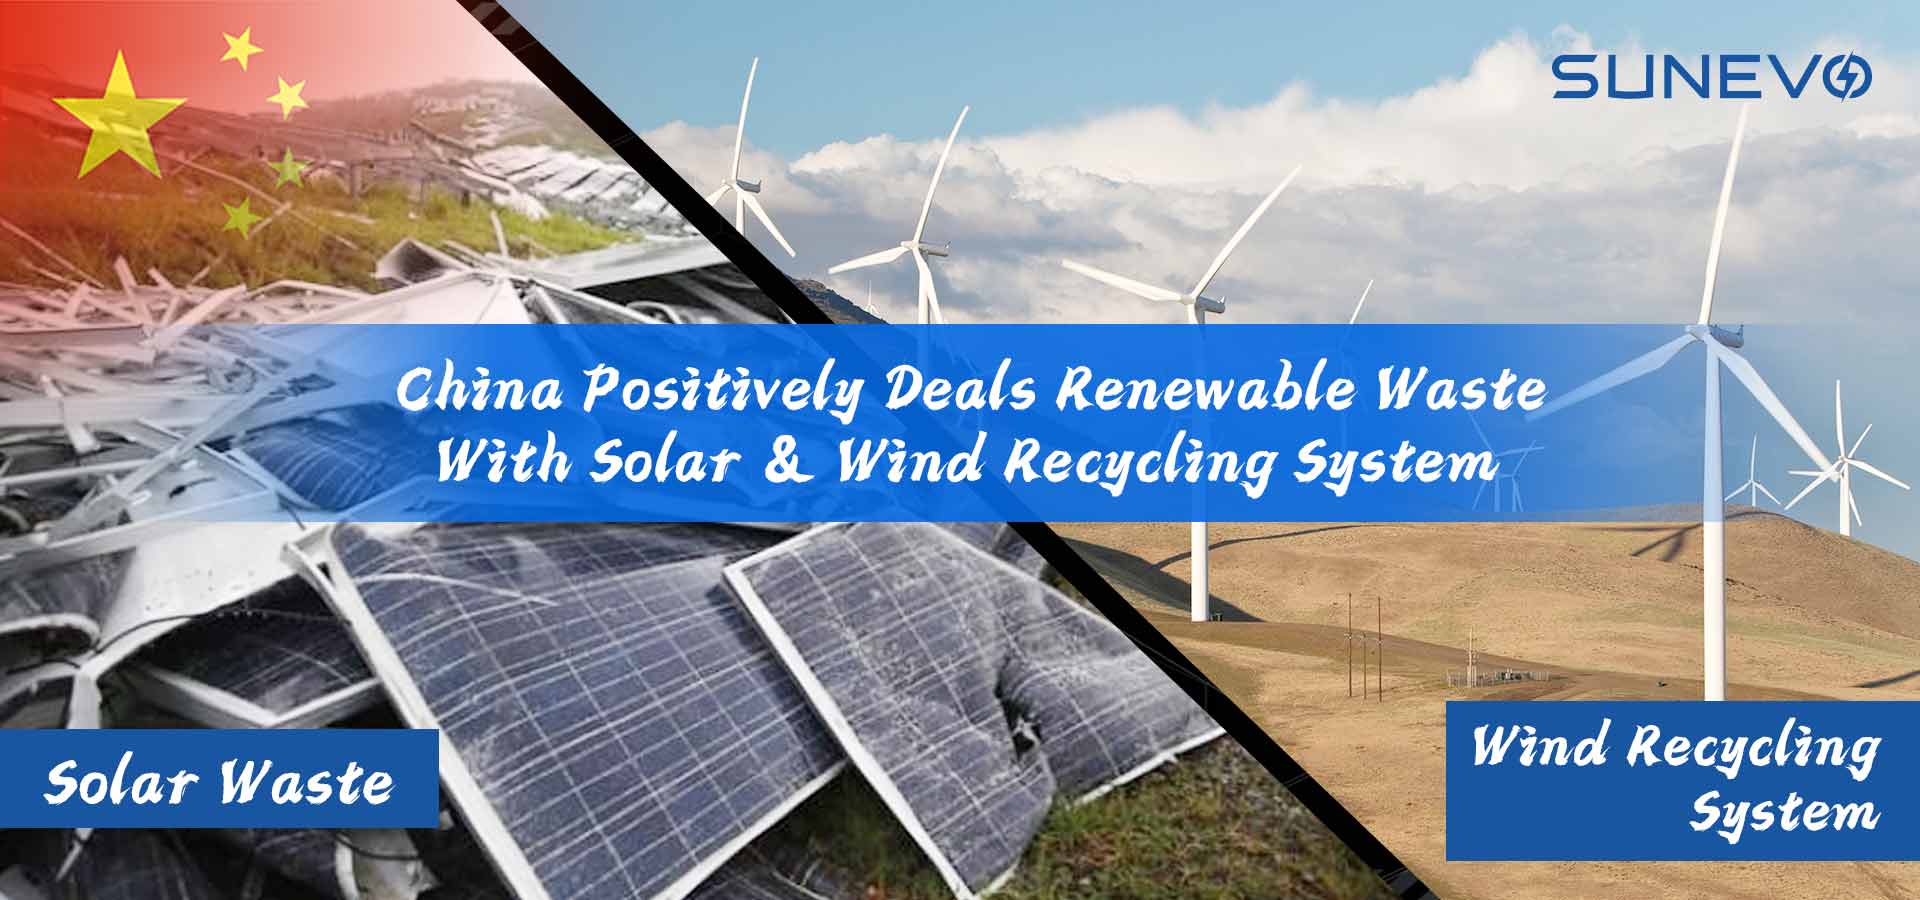 China trata residuos renovables con sistemas de reciclaje solares y eólicos